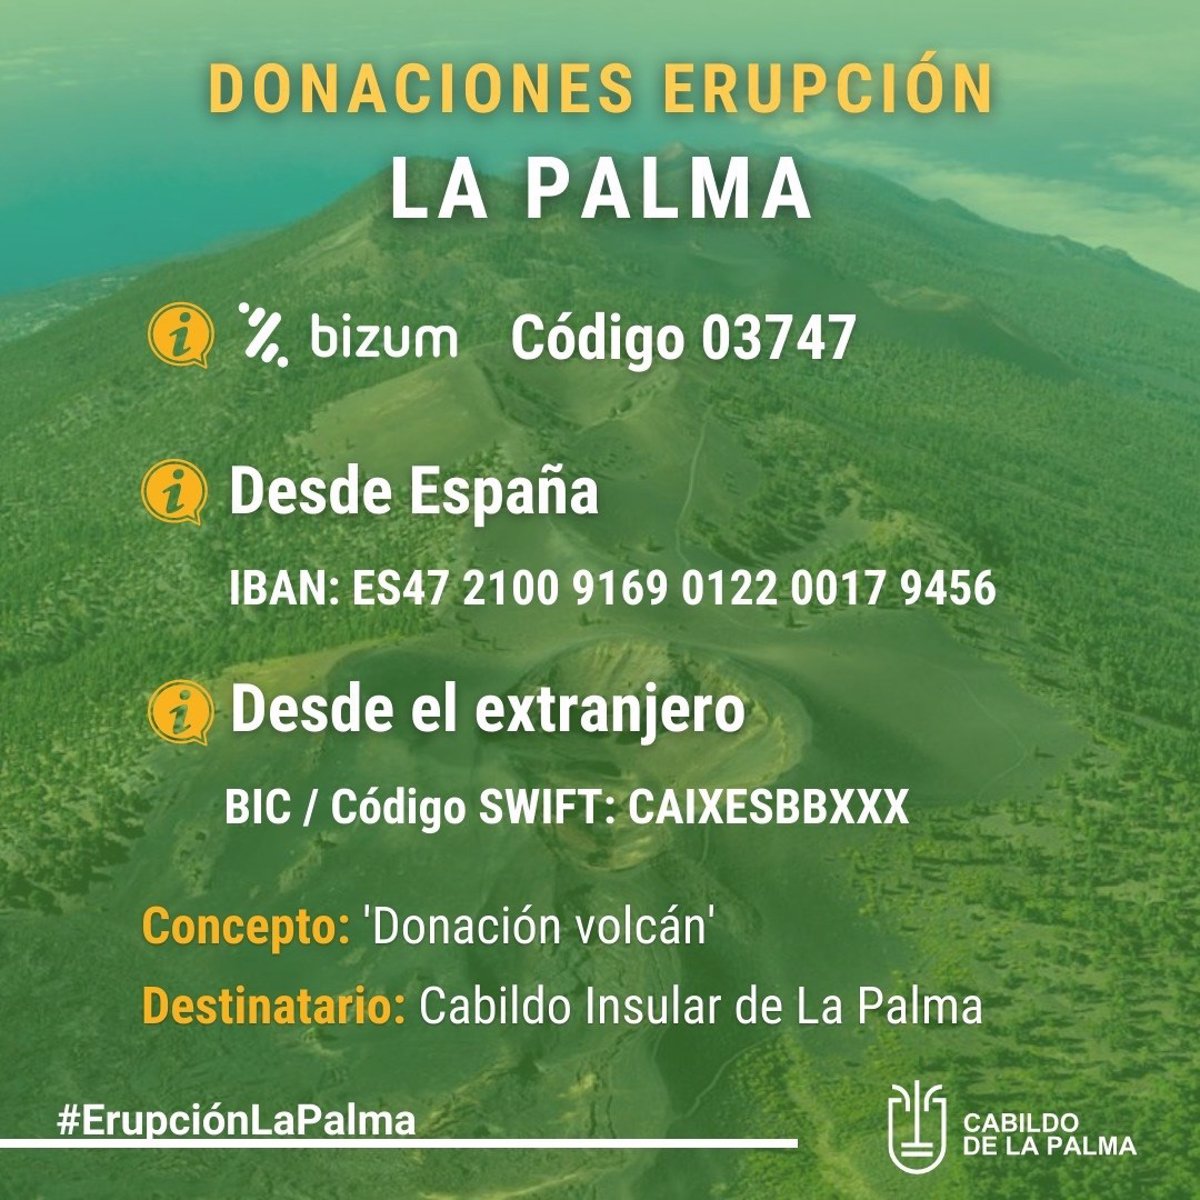 ¿Cómo ayudar a los afectados del volcán de La Palma?: donaciones de dinero, ropa y enseres de primera necesidad